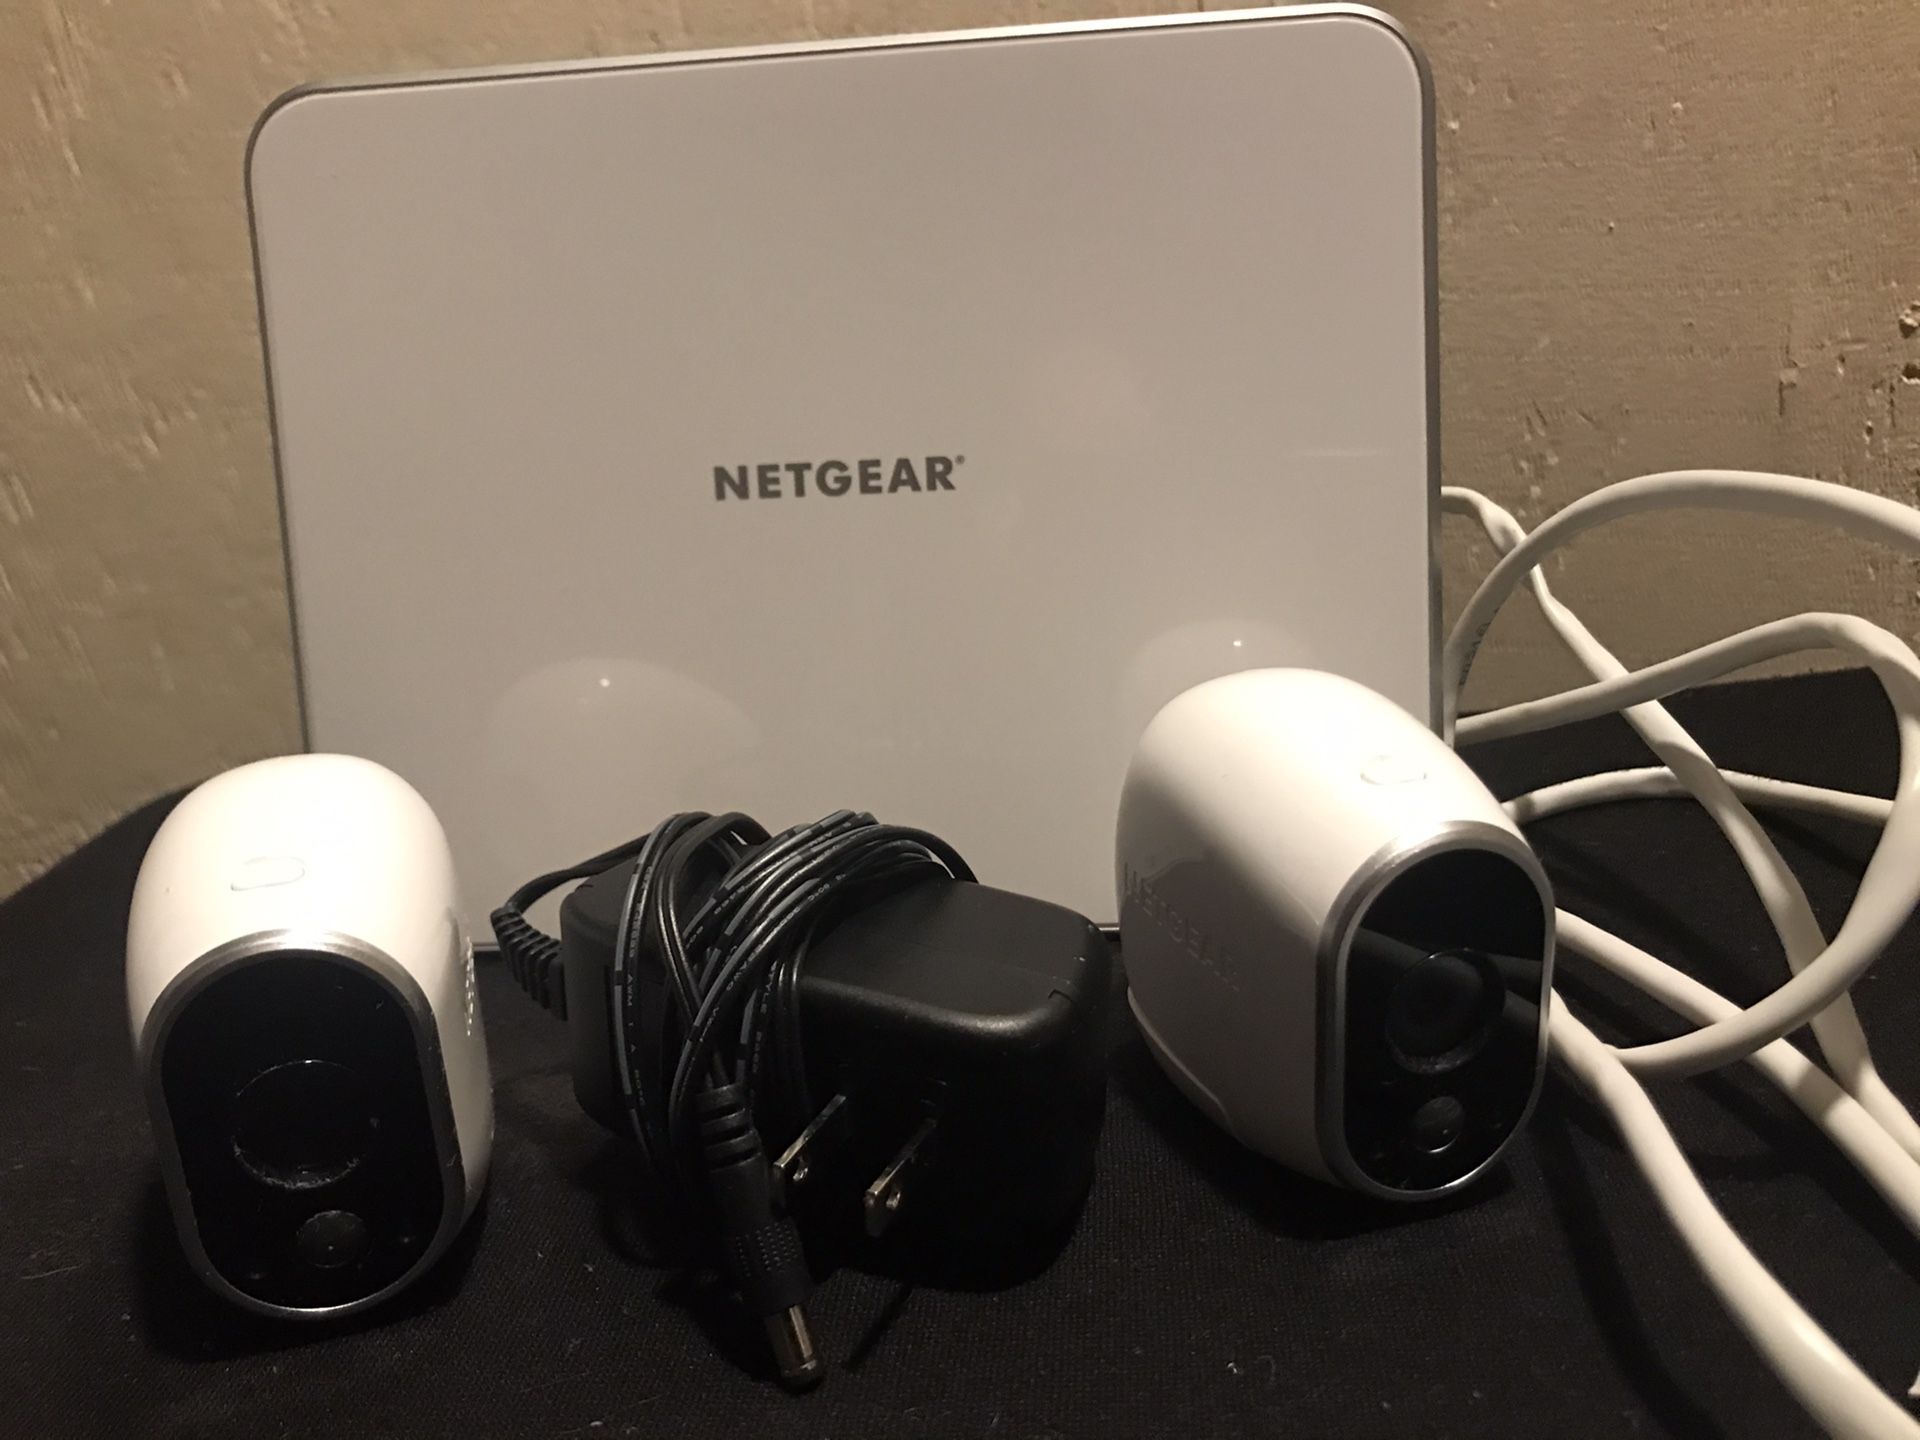 Netgear home security camera system